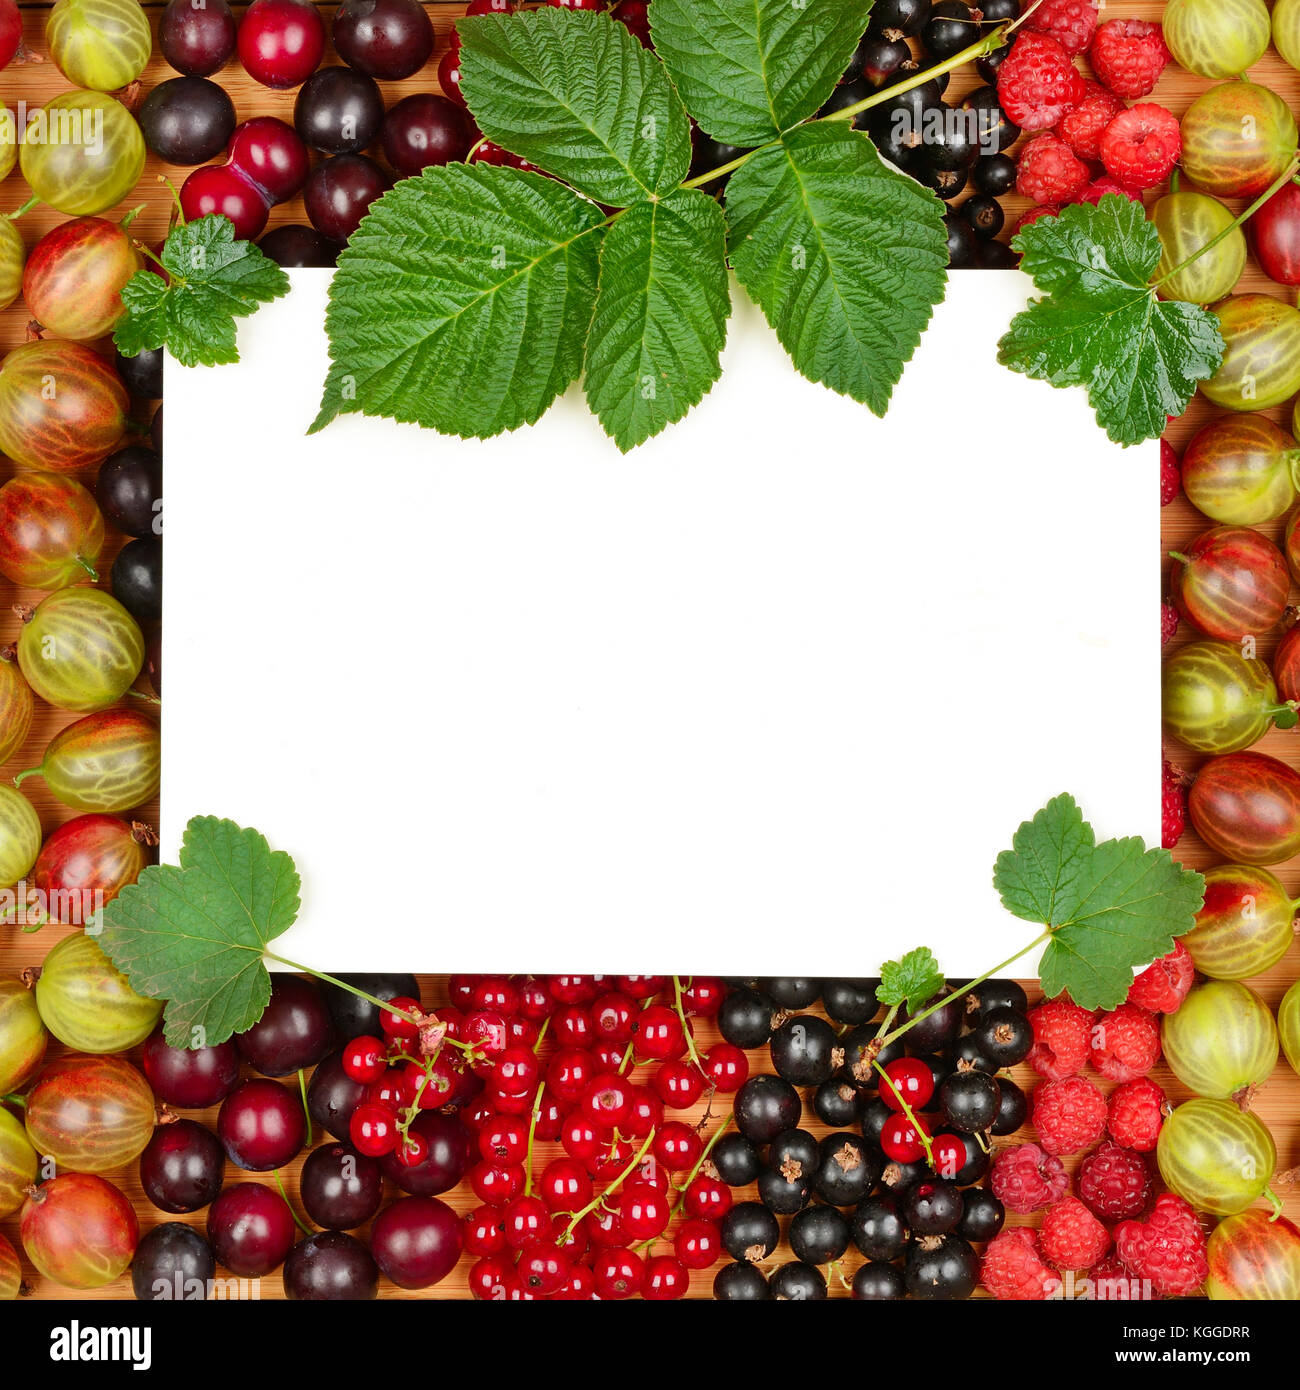 Scheda ricetta sullo sfondo dei frutti di bosco freschi (lamponi, ribes, uva secca di Corinto). vista dall'alto. Foto Stock